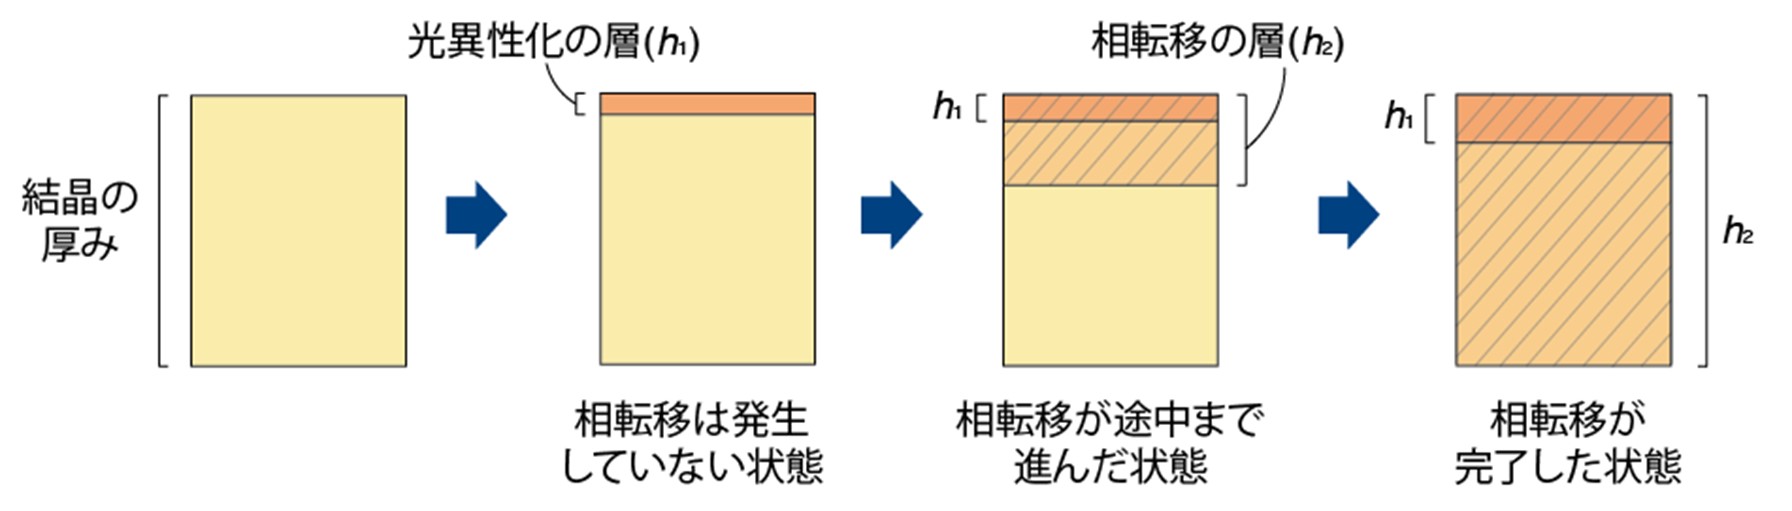 図３.変形シミュレーションで用いた動的多層モデル